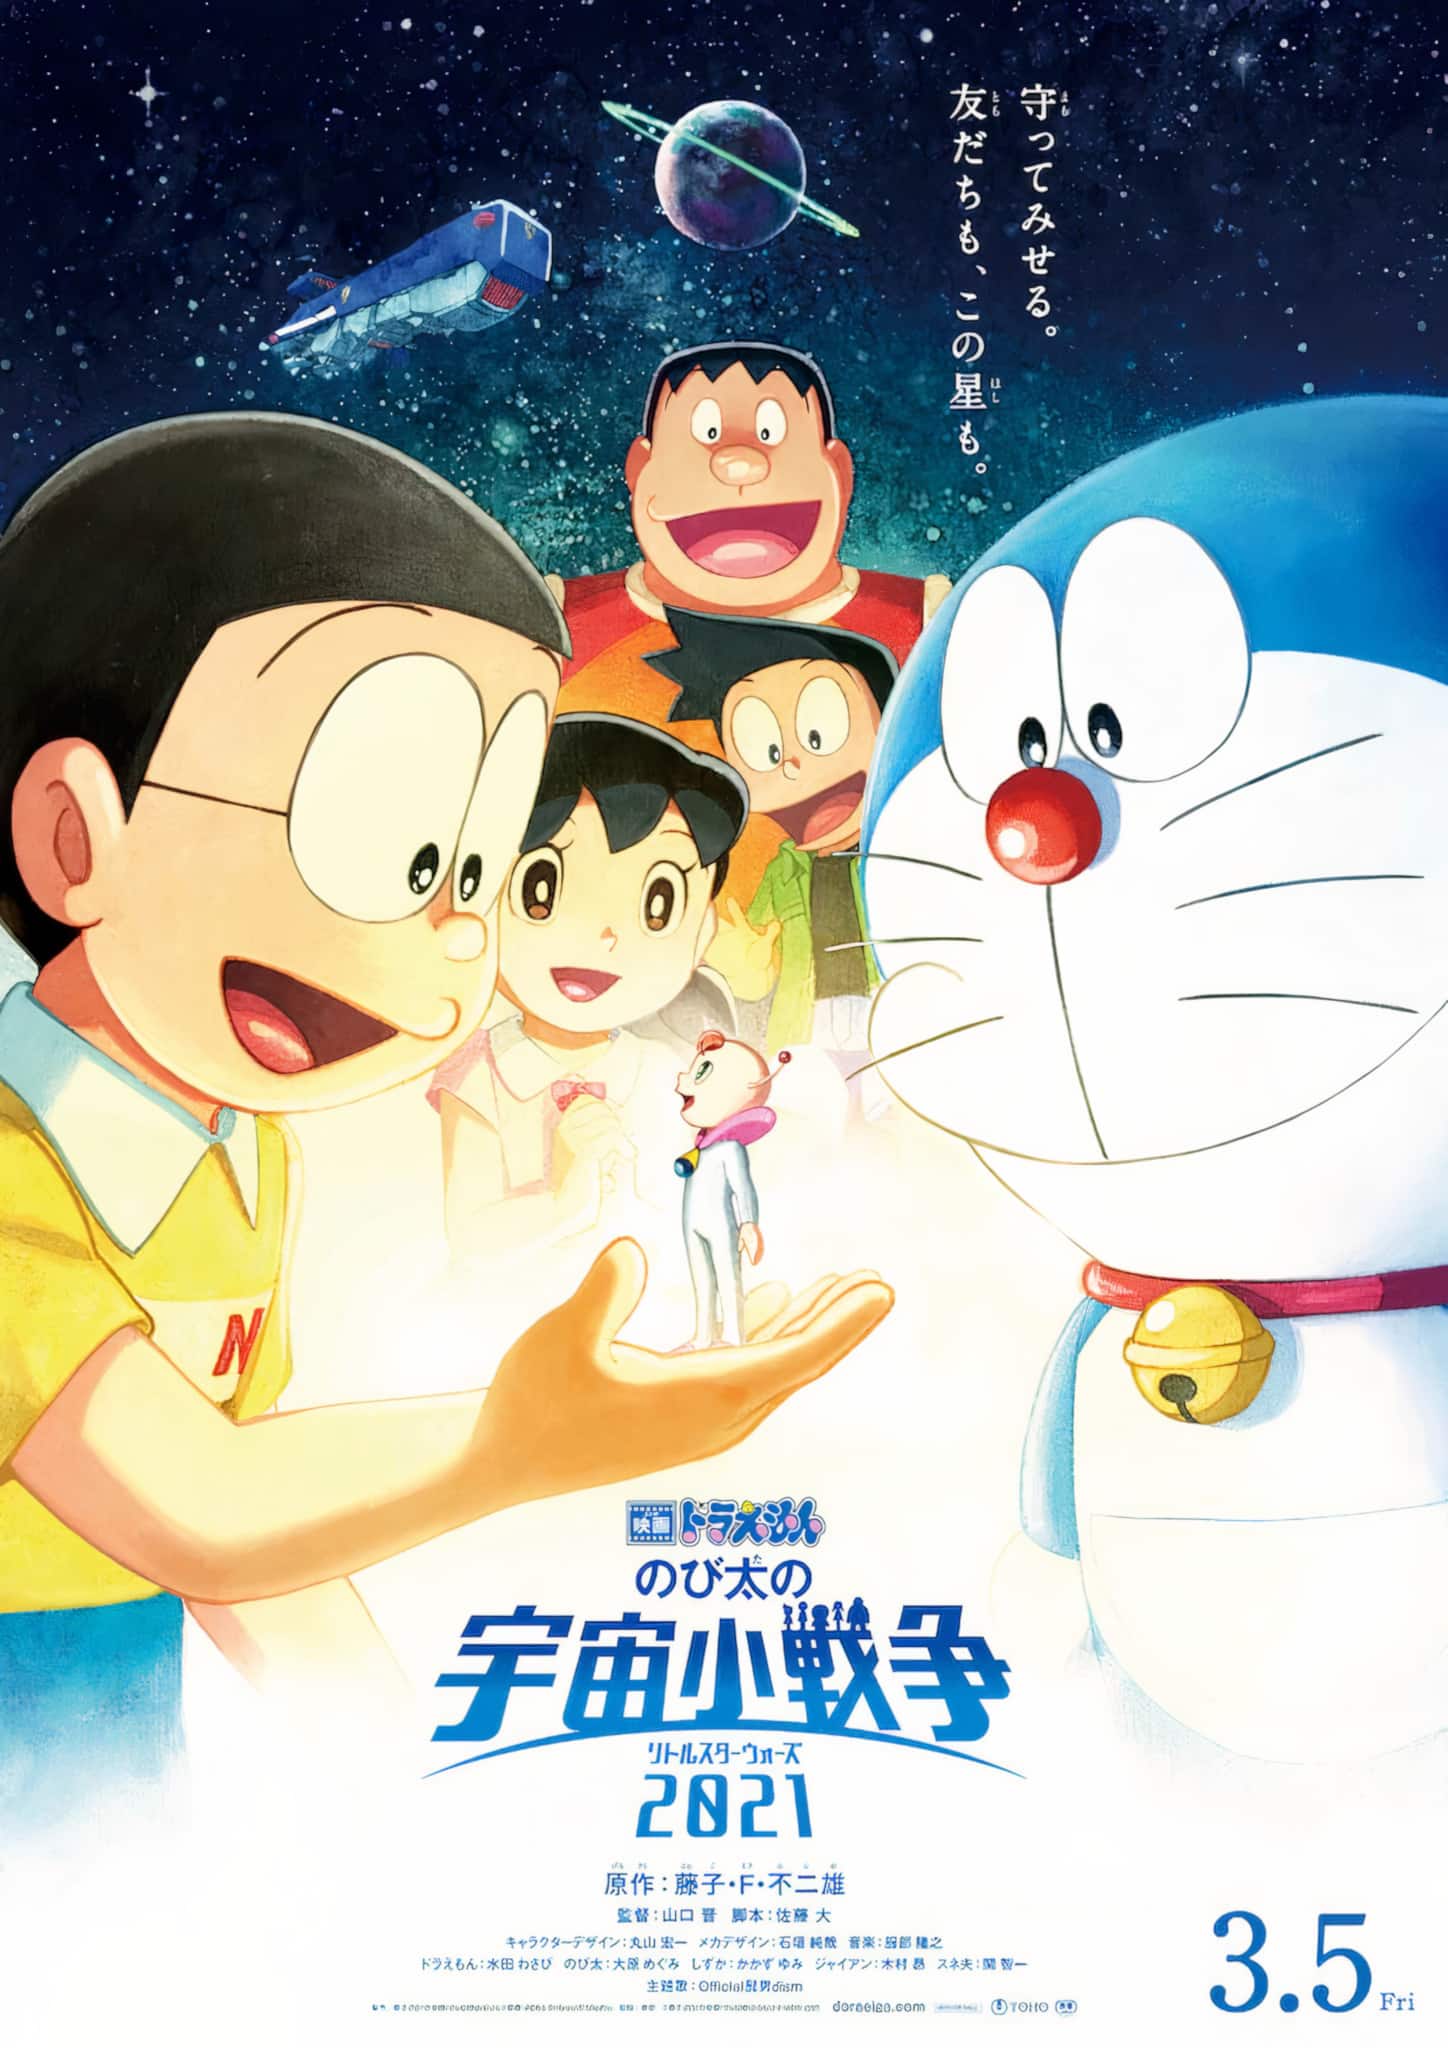 Annonce du film Doraemon Nobita's Little Star Wars en date de sortie